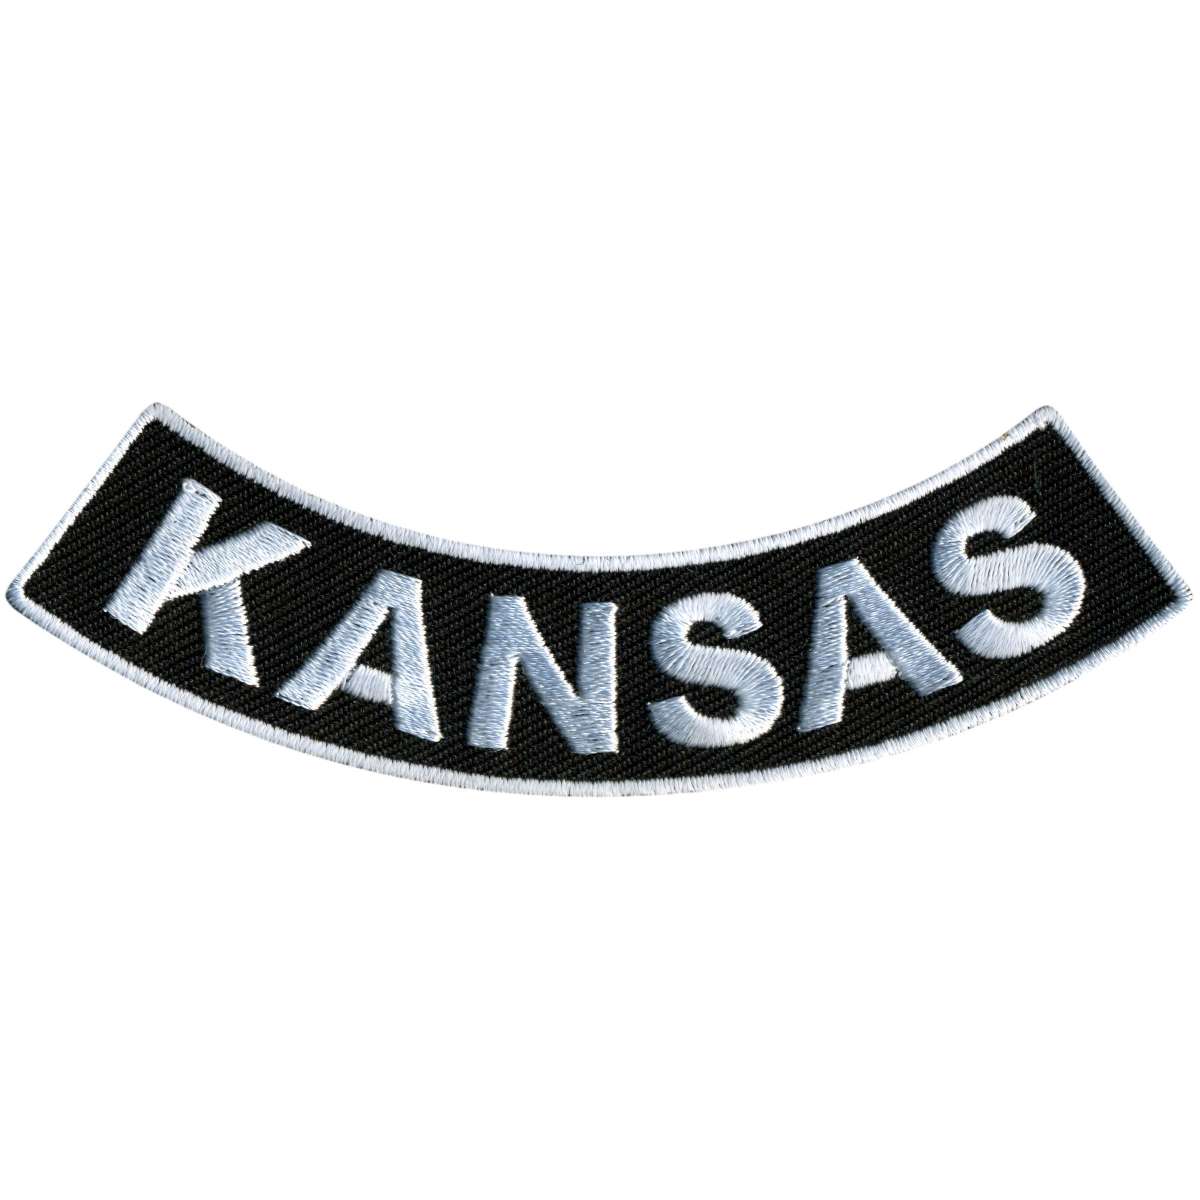 Hot Leathers Kansas 4” X 1” Bottom Rocker Patch PPM5032